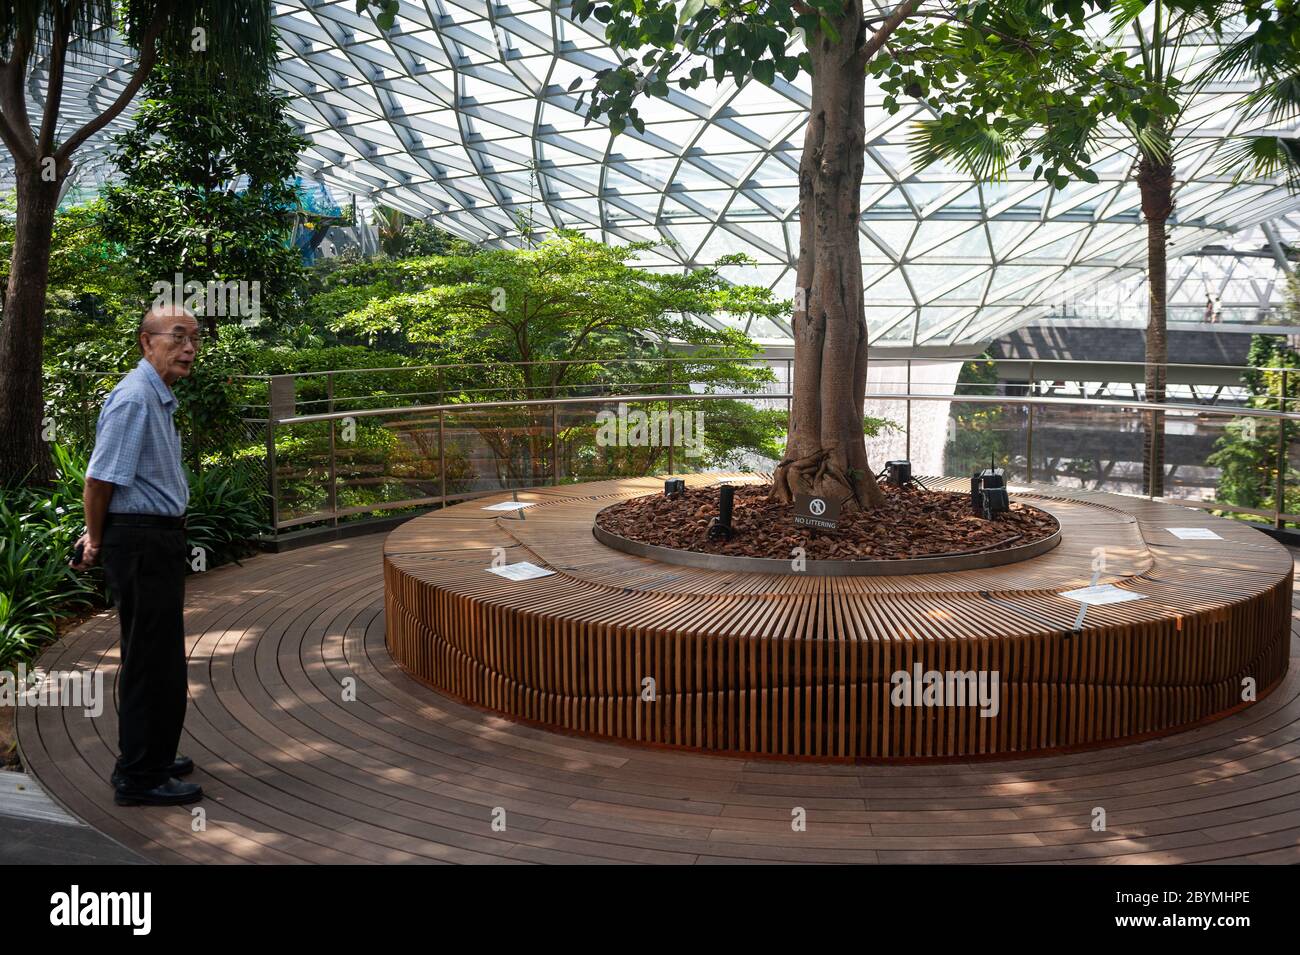 28.03.2020, Singapour, , Singapour - dans le parc Canopy du nouveau terminal Jewel de l'aéroport de Changi, des mesures de distance de sécurité ont été introduites Banque D'Images